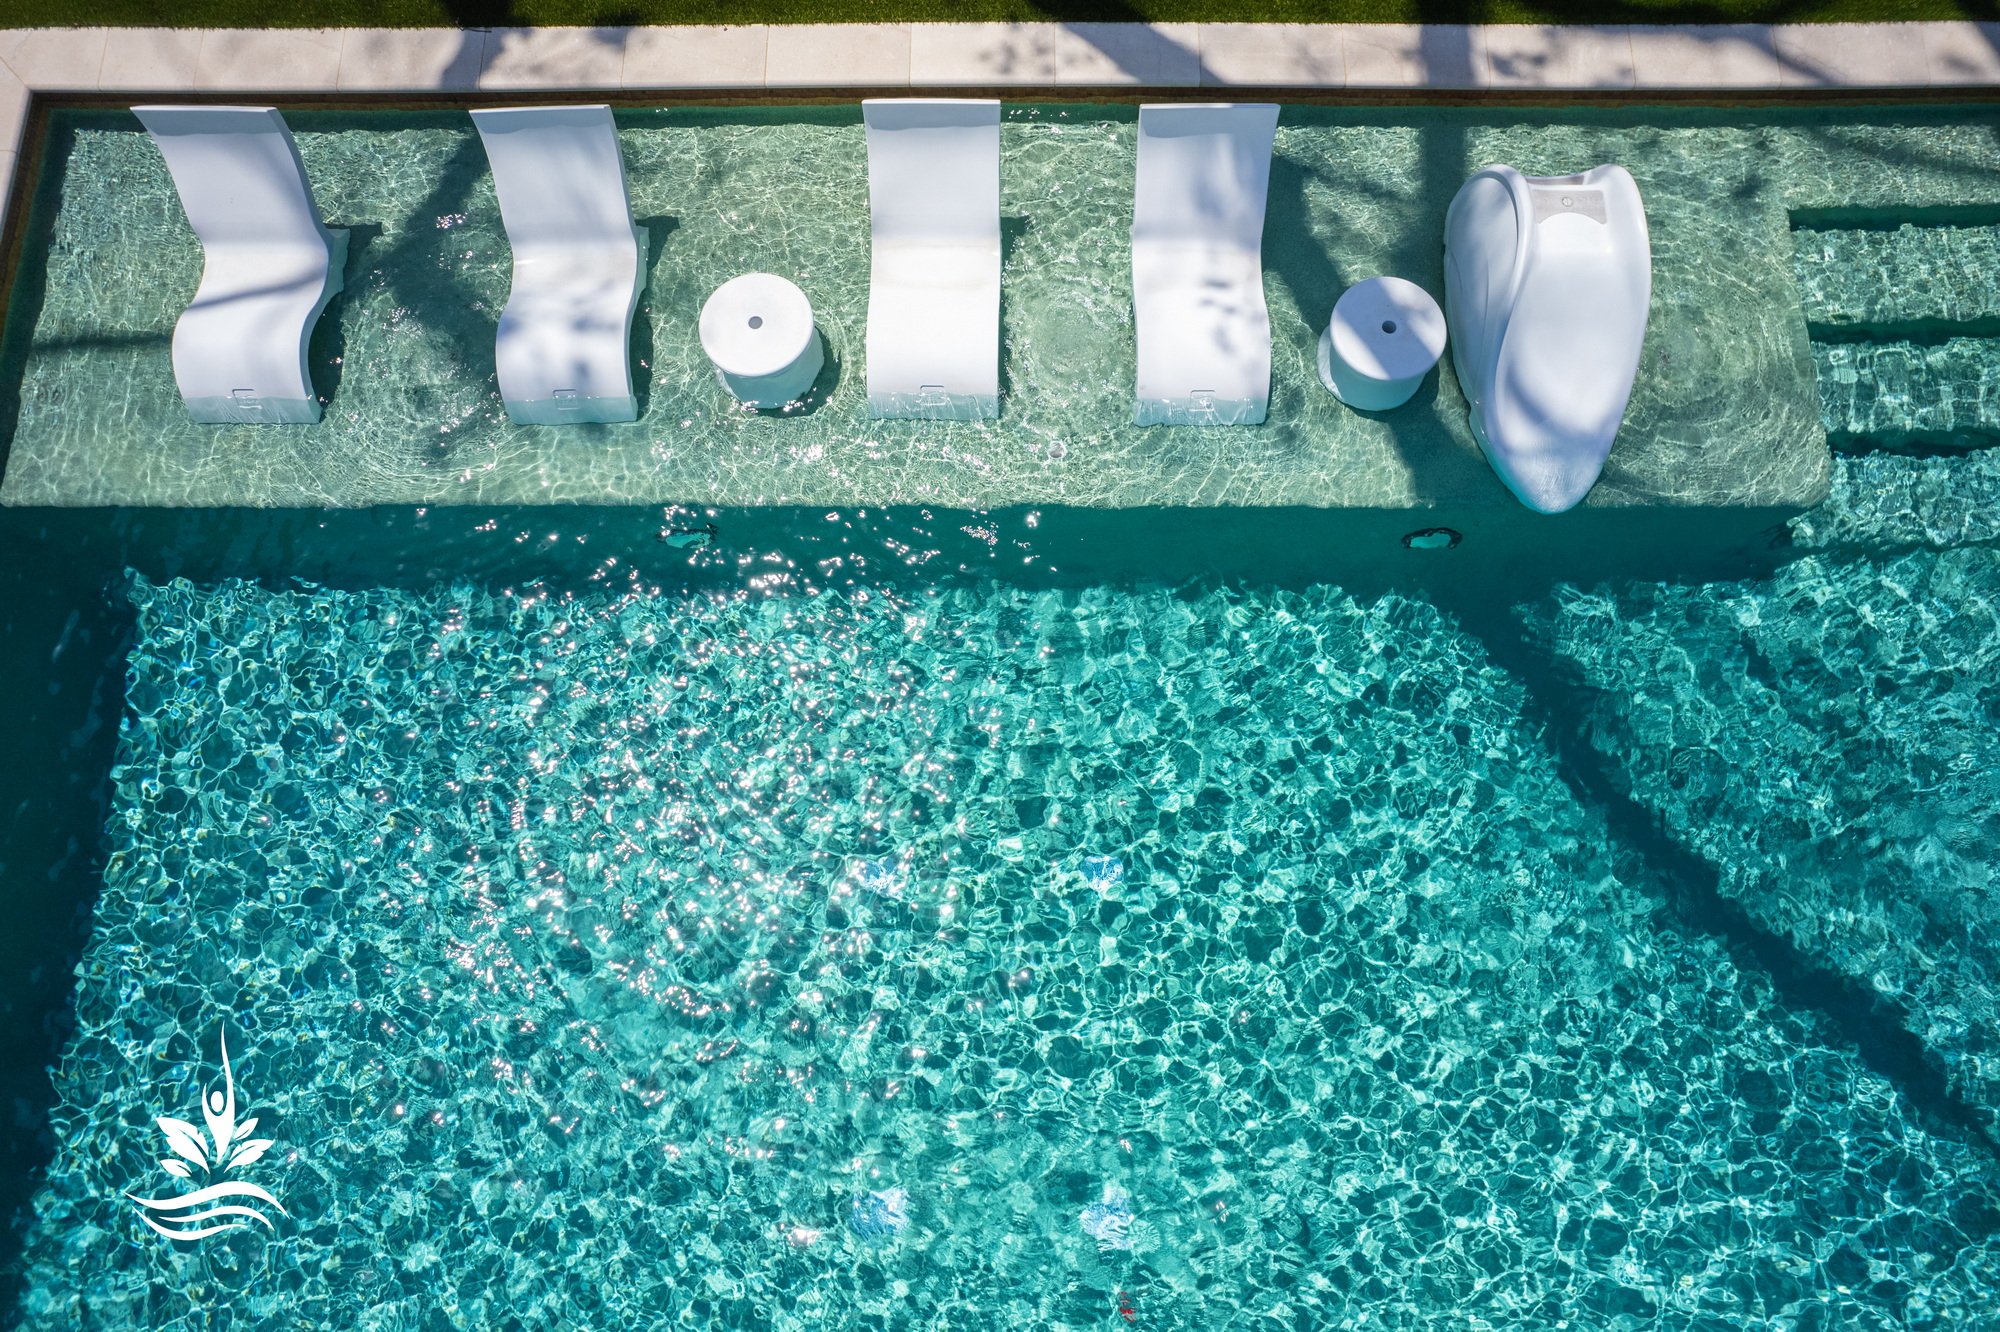 Luxe swimming pool design in Dallas TX